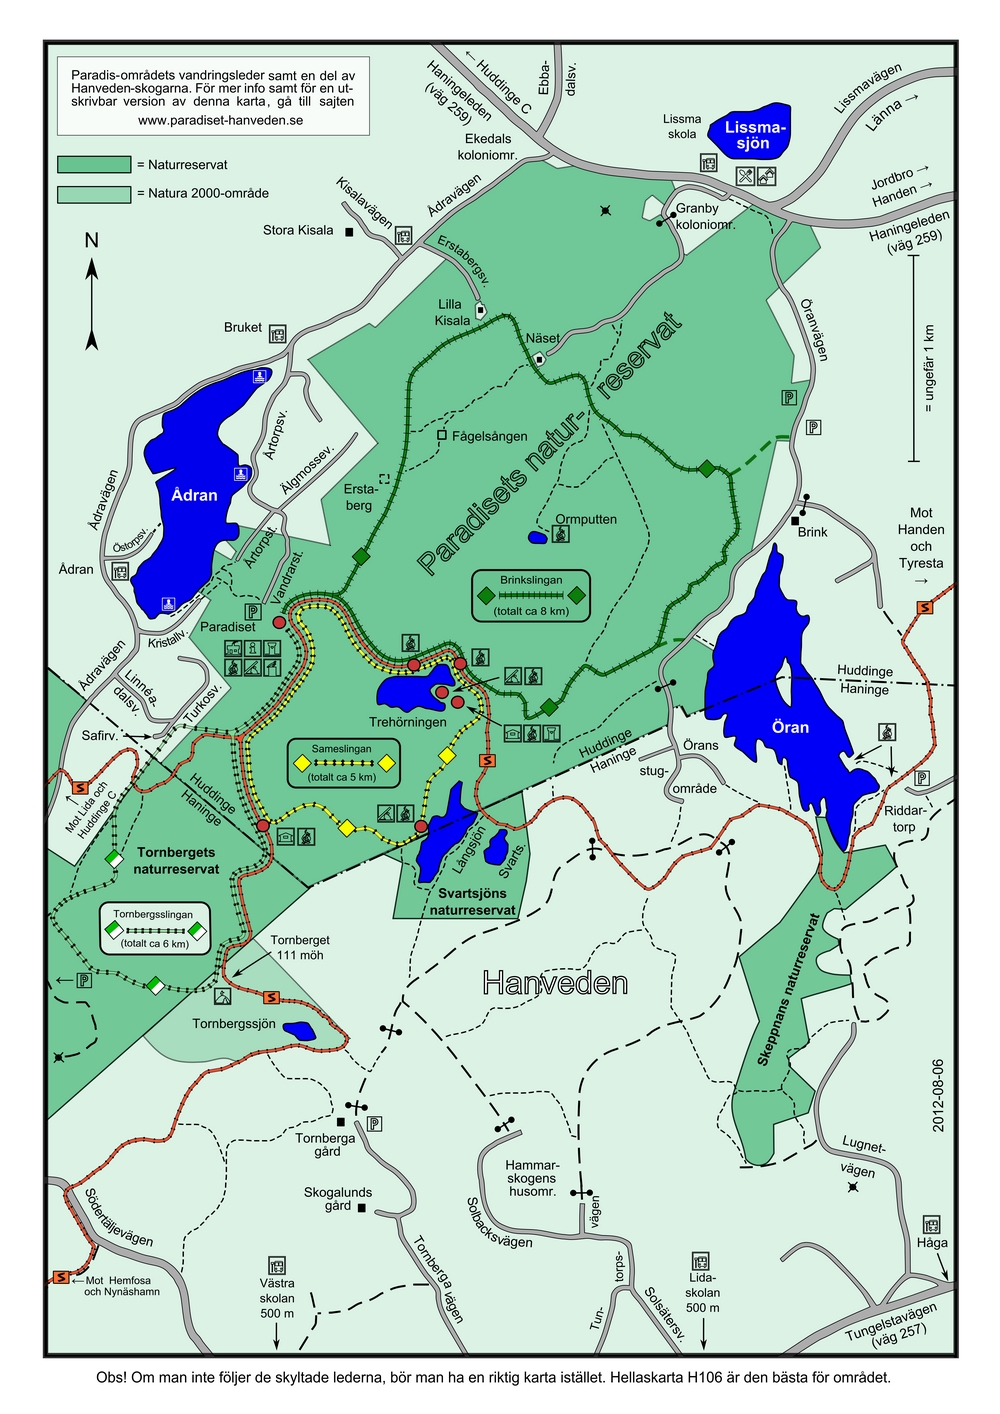 Paradis-områdets vandringsleder samt en del av Hanveden-skogarna.